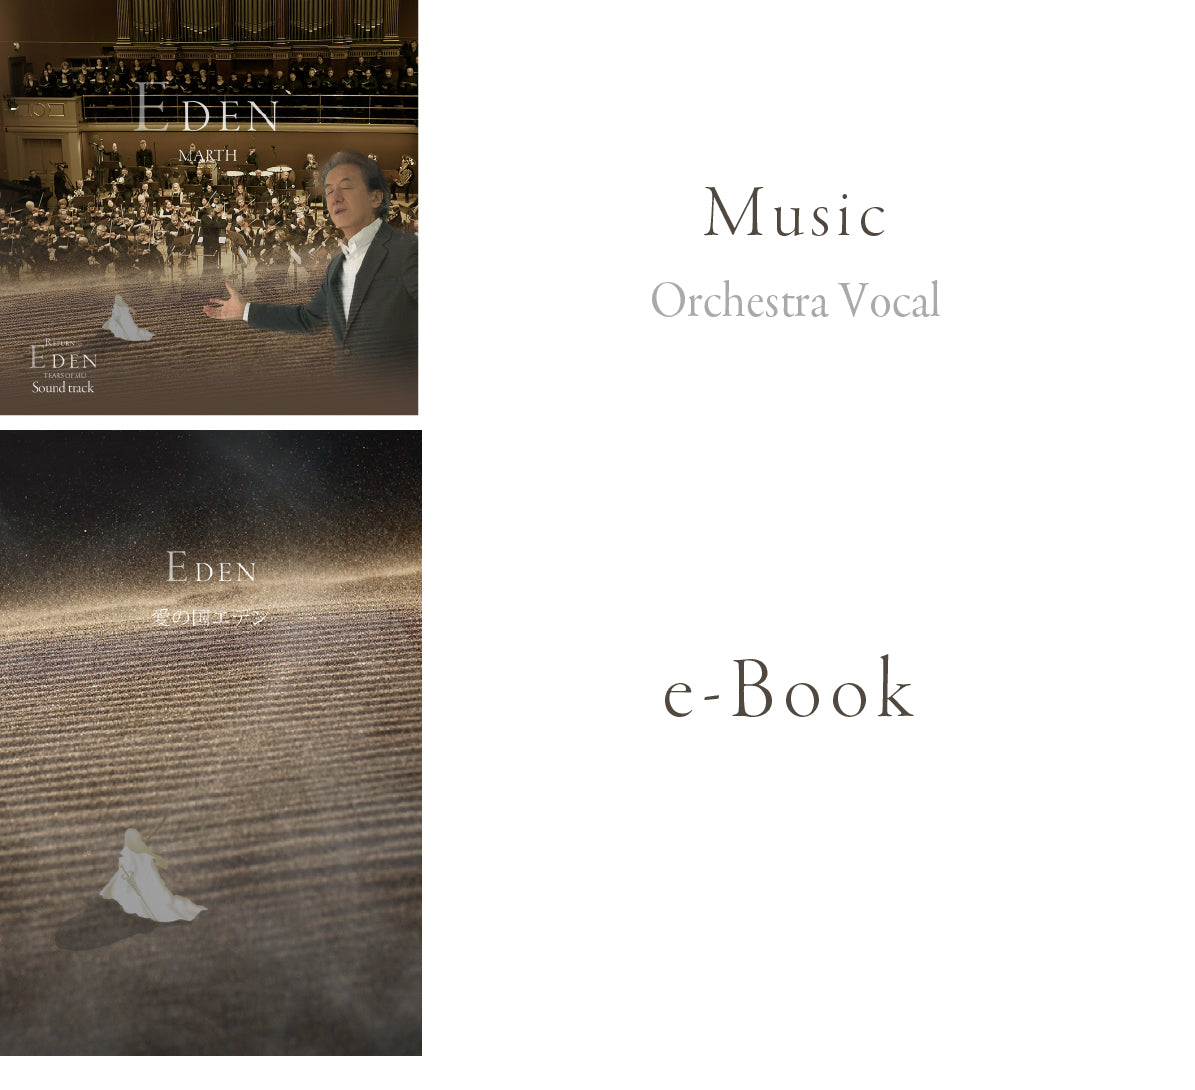 EDEN MARTH Music Video & E book (Digital download)